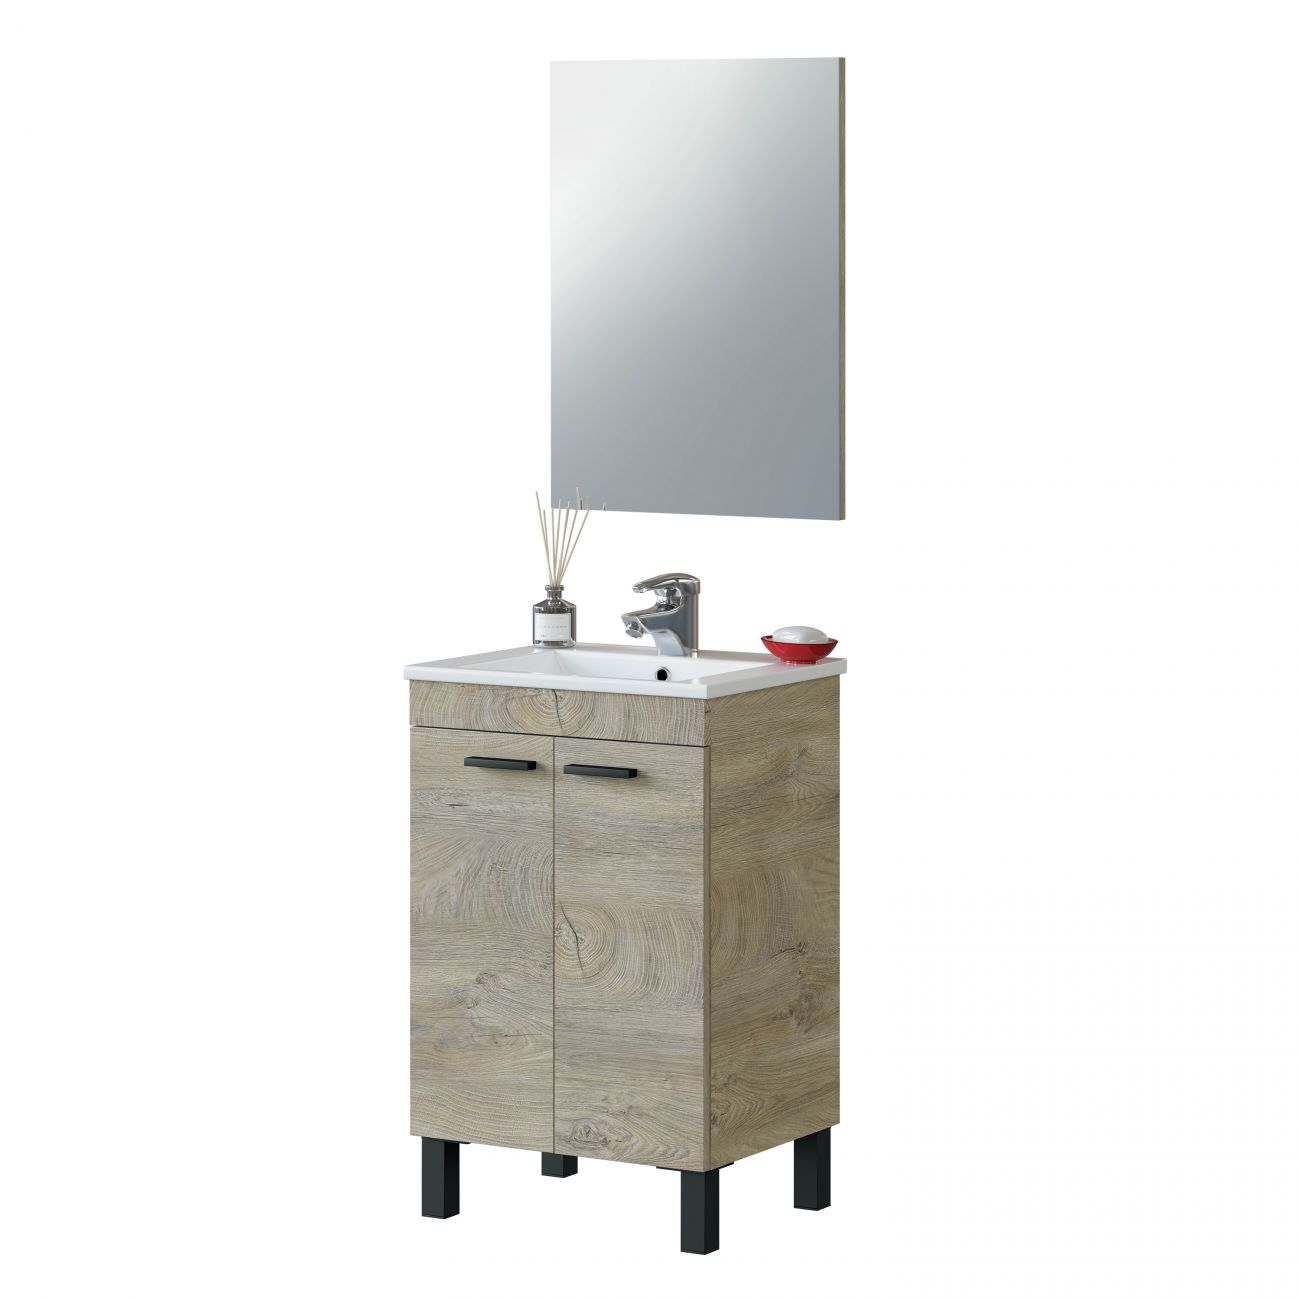 Mueble de baño Túnez con espejo liso - Muebles de baño